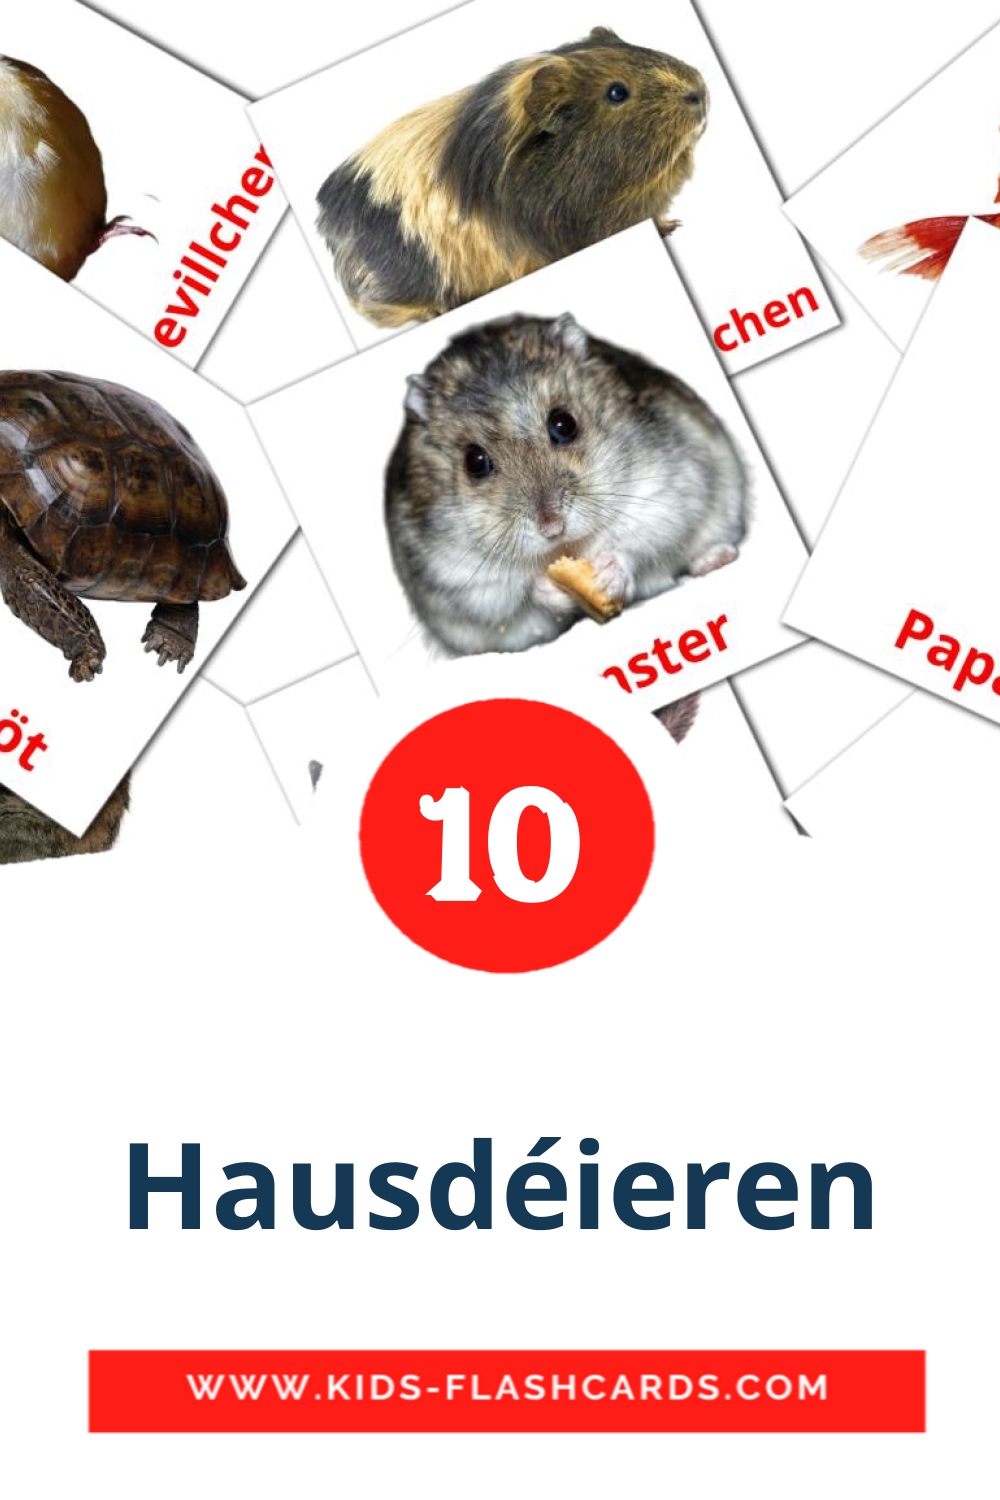 10 Cartões com Imagens de Hausdéieren para Jardim de Infância em luxemburguês